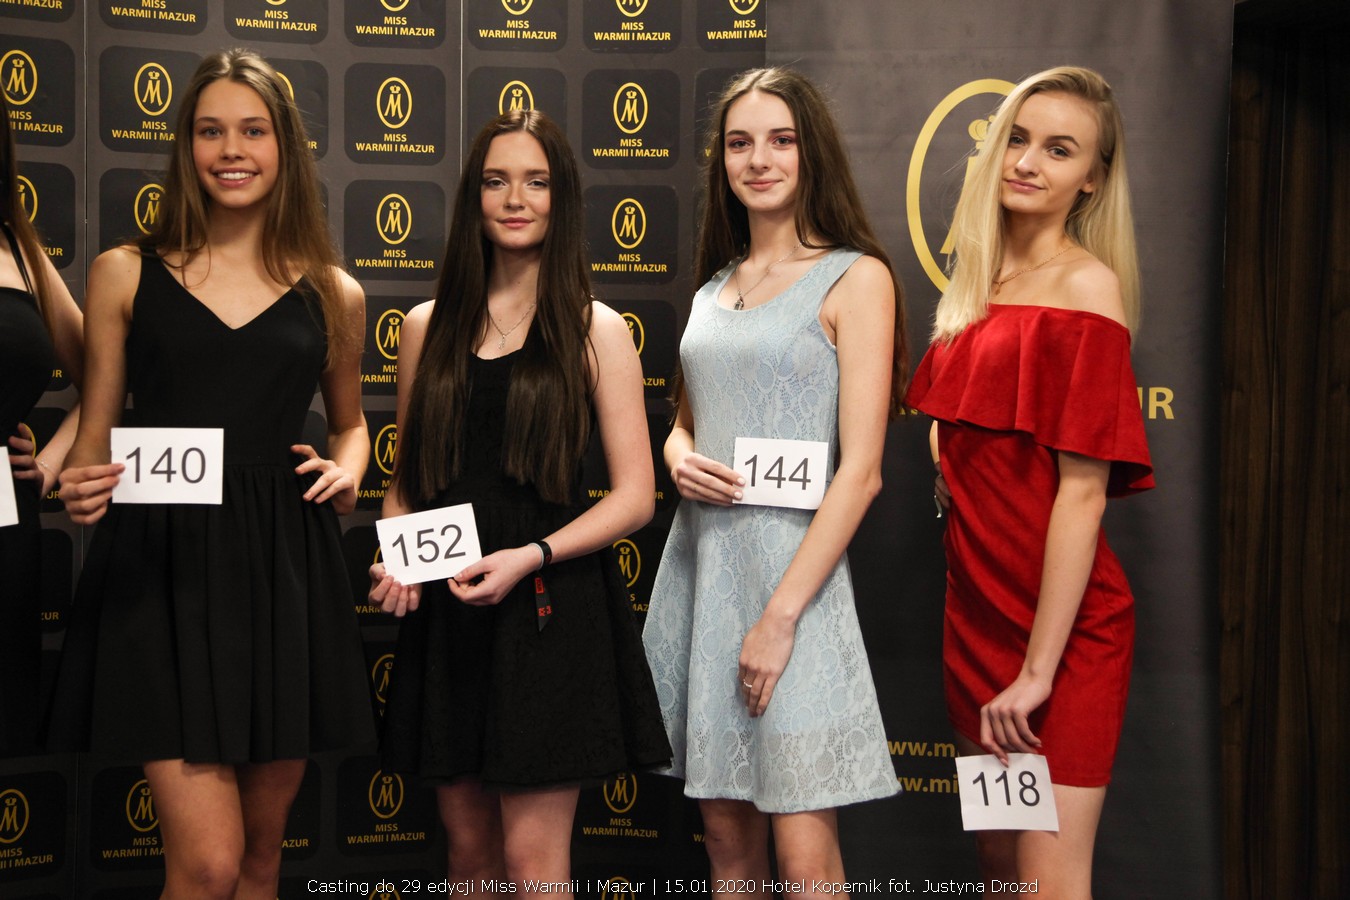 Miss Warmii i Mazur casting, Pierwszy casting do 29 edycji Miss Warmii i Mazur za nami, Miss Warmii i Mazur